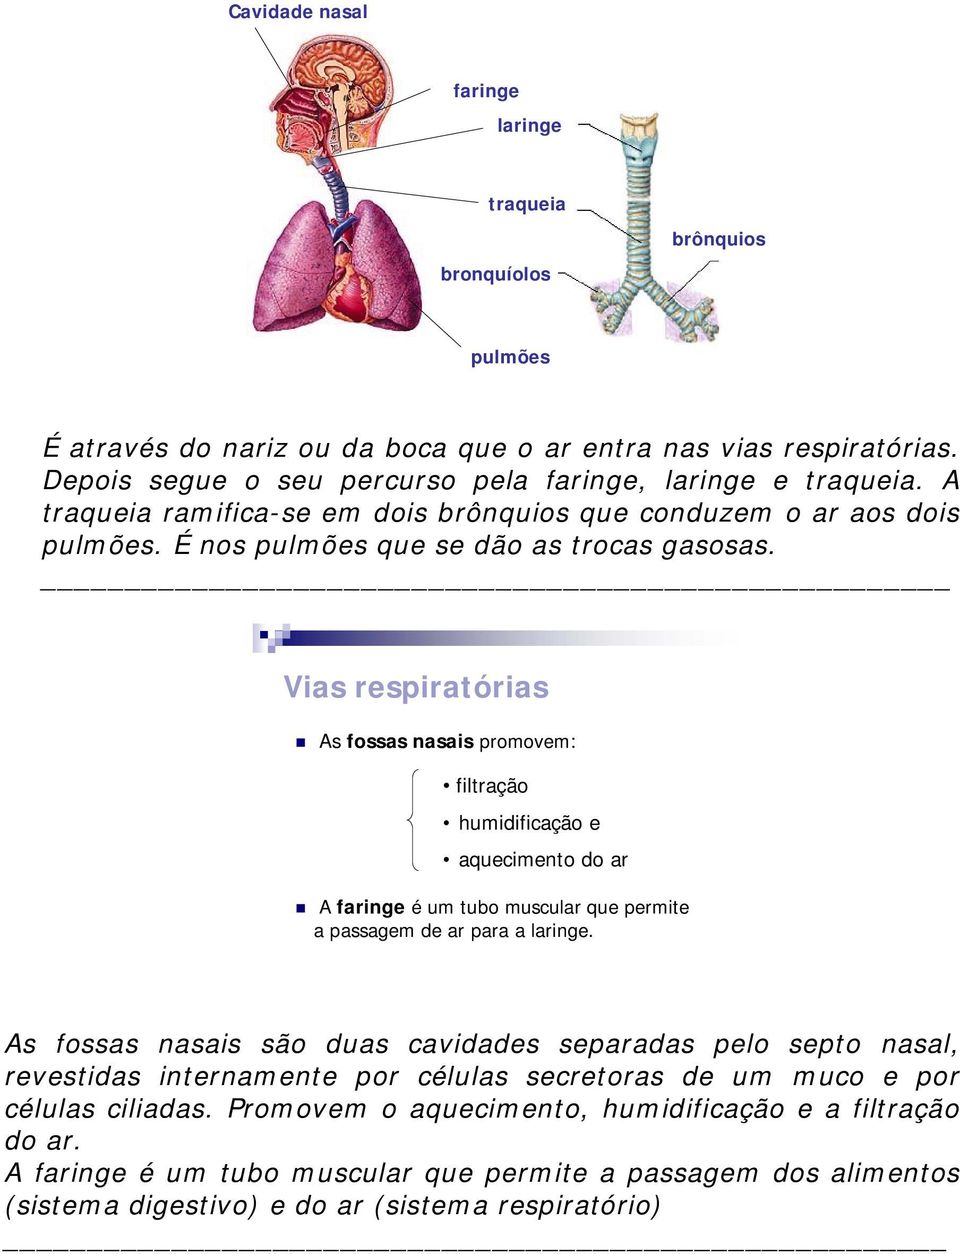 Vias respiratórias As fossas nasais promovem: filtração humidificação e aquecimento do ar A faringe é um tubo muscular que permite a passagem de ar para a laringe.